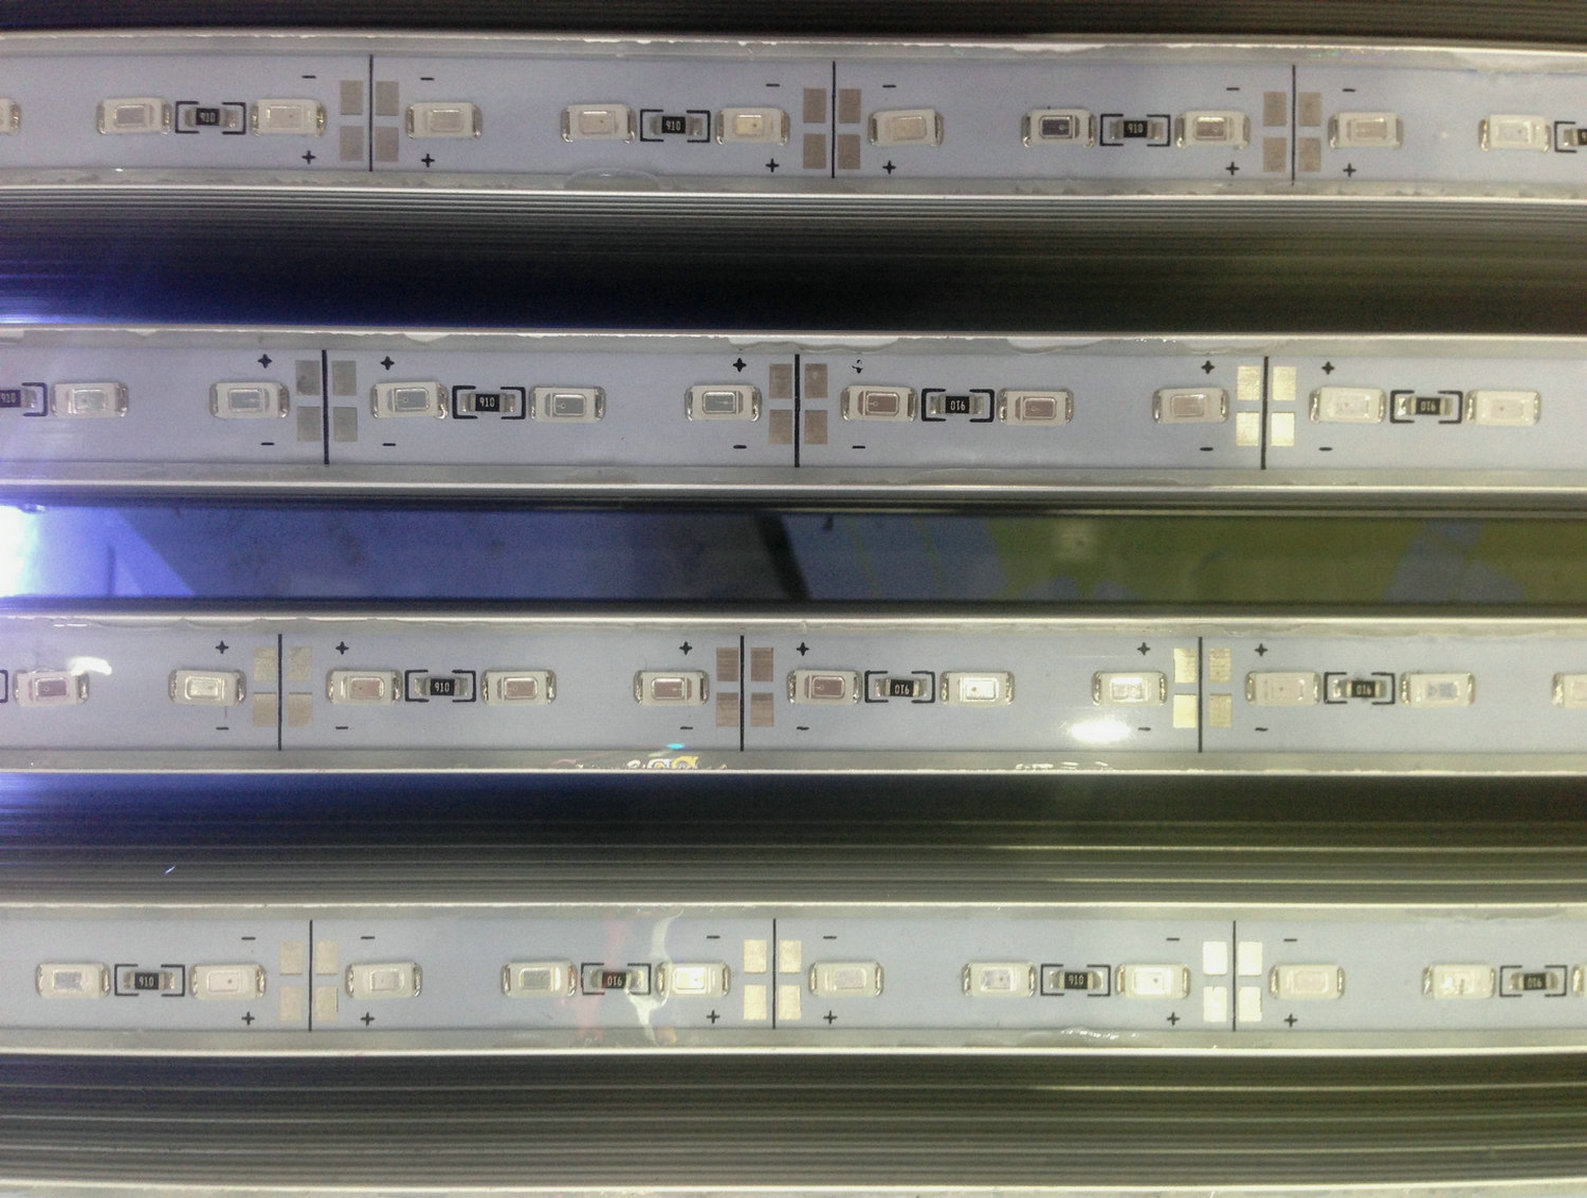 DC12V LED Grow Light 50cm med DC Plug LED -stångljus 5630 för akvariets växthusanläggning som växer belysning 4st D2.0